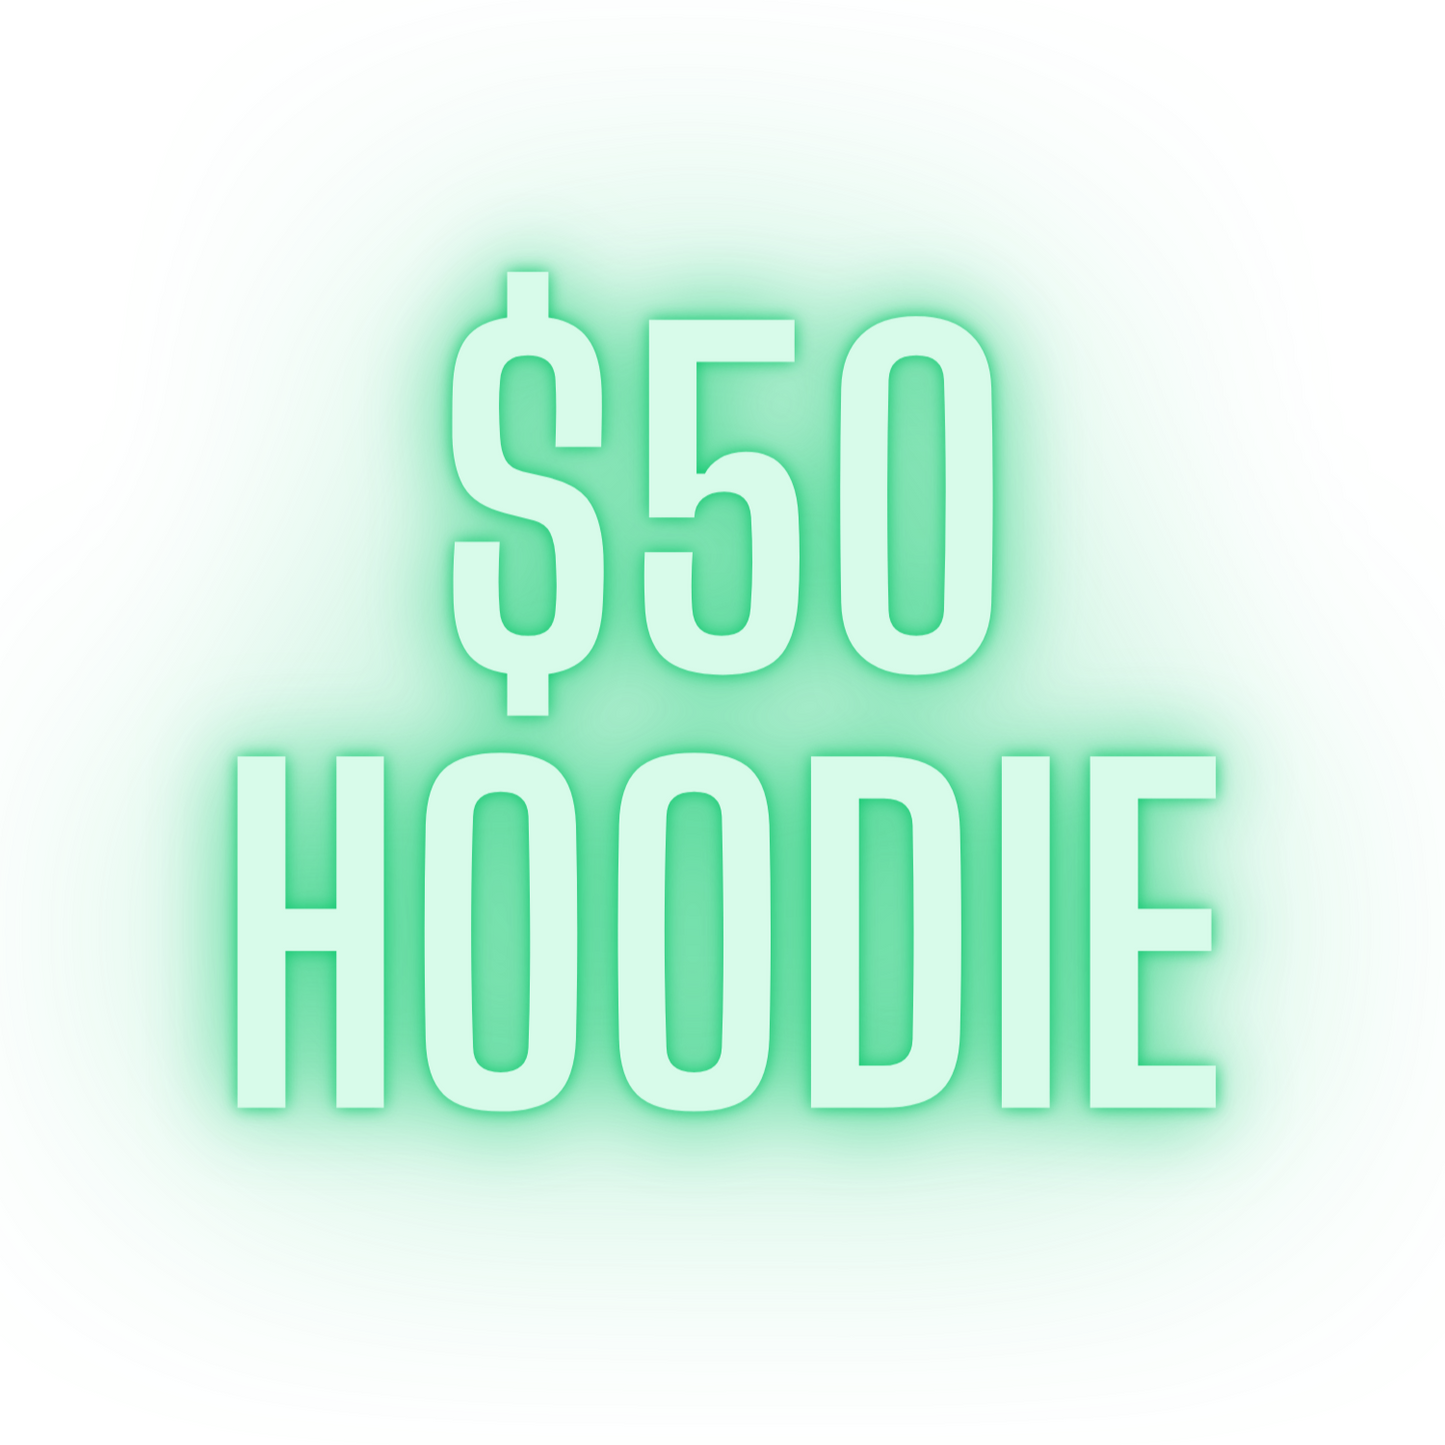 $50 Hoodie